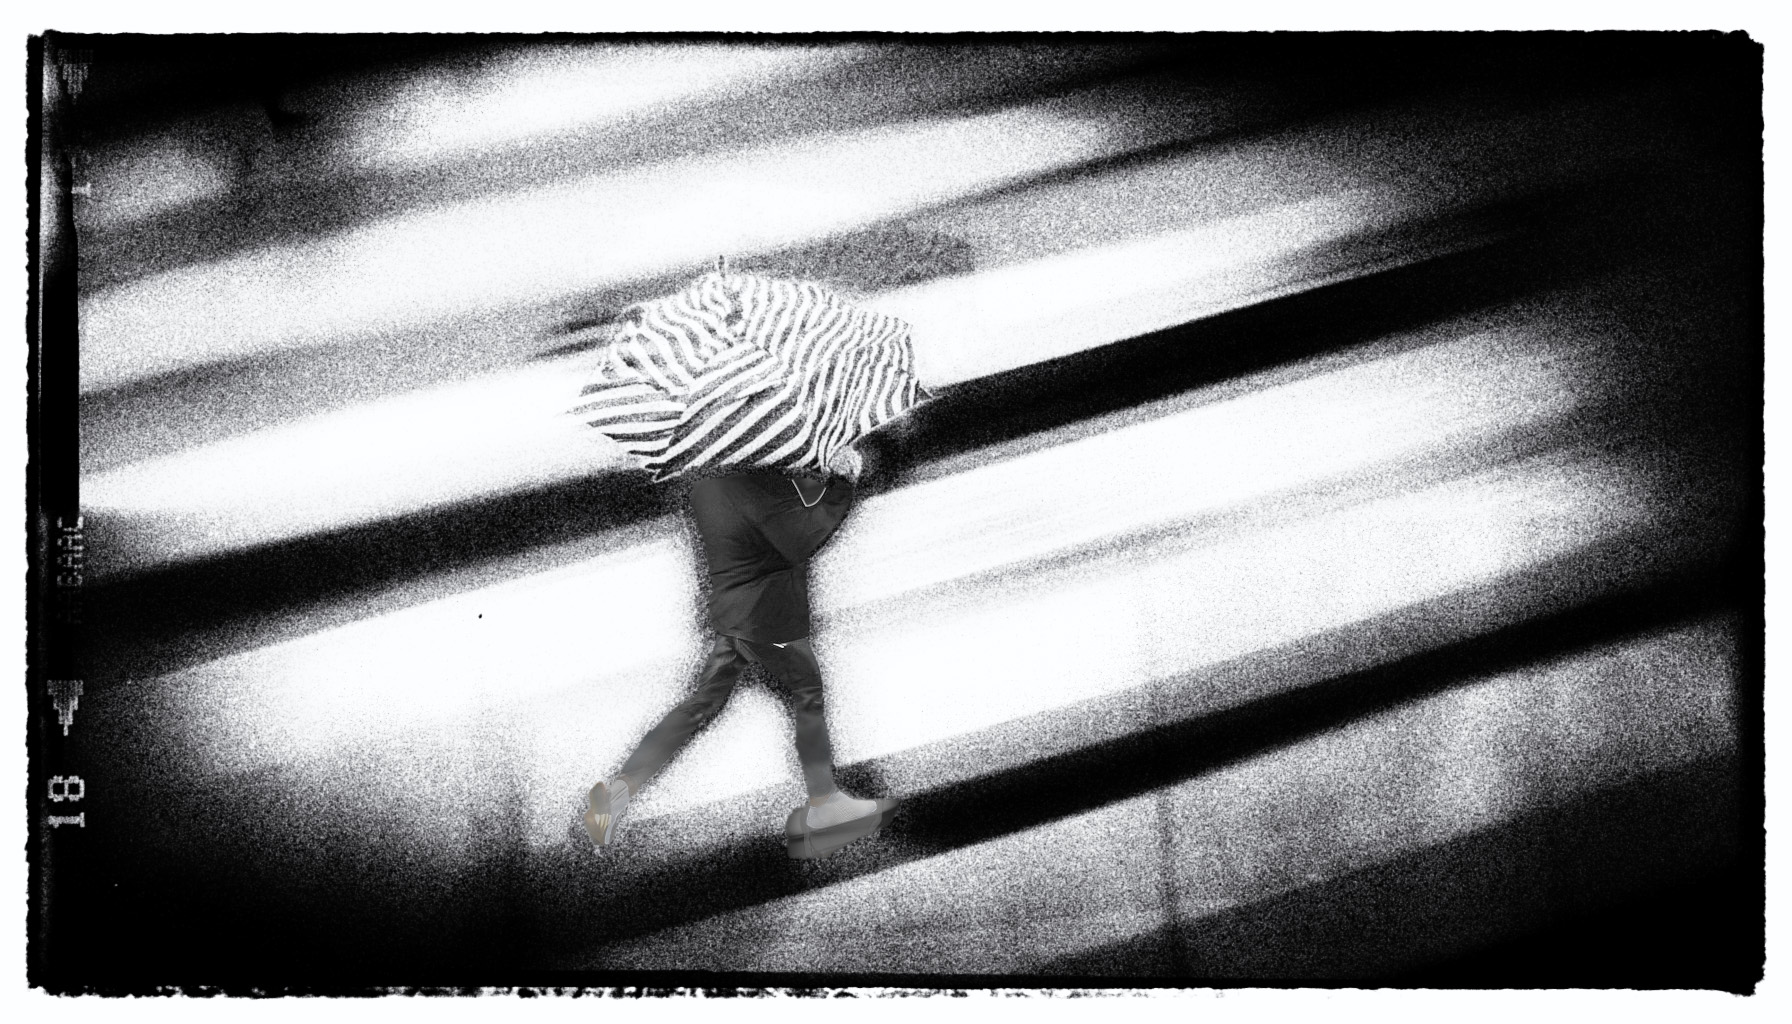 Firefly Mann mit Regenschirm rennt über einen Zebrastreifen. Blick auf die szene von oben 4436